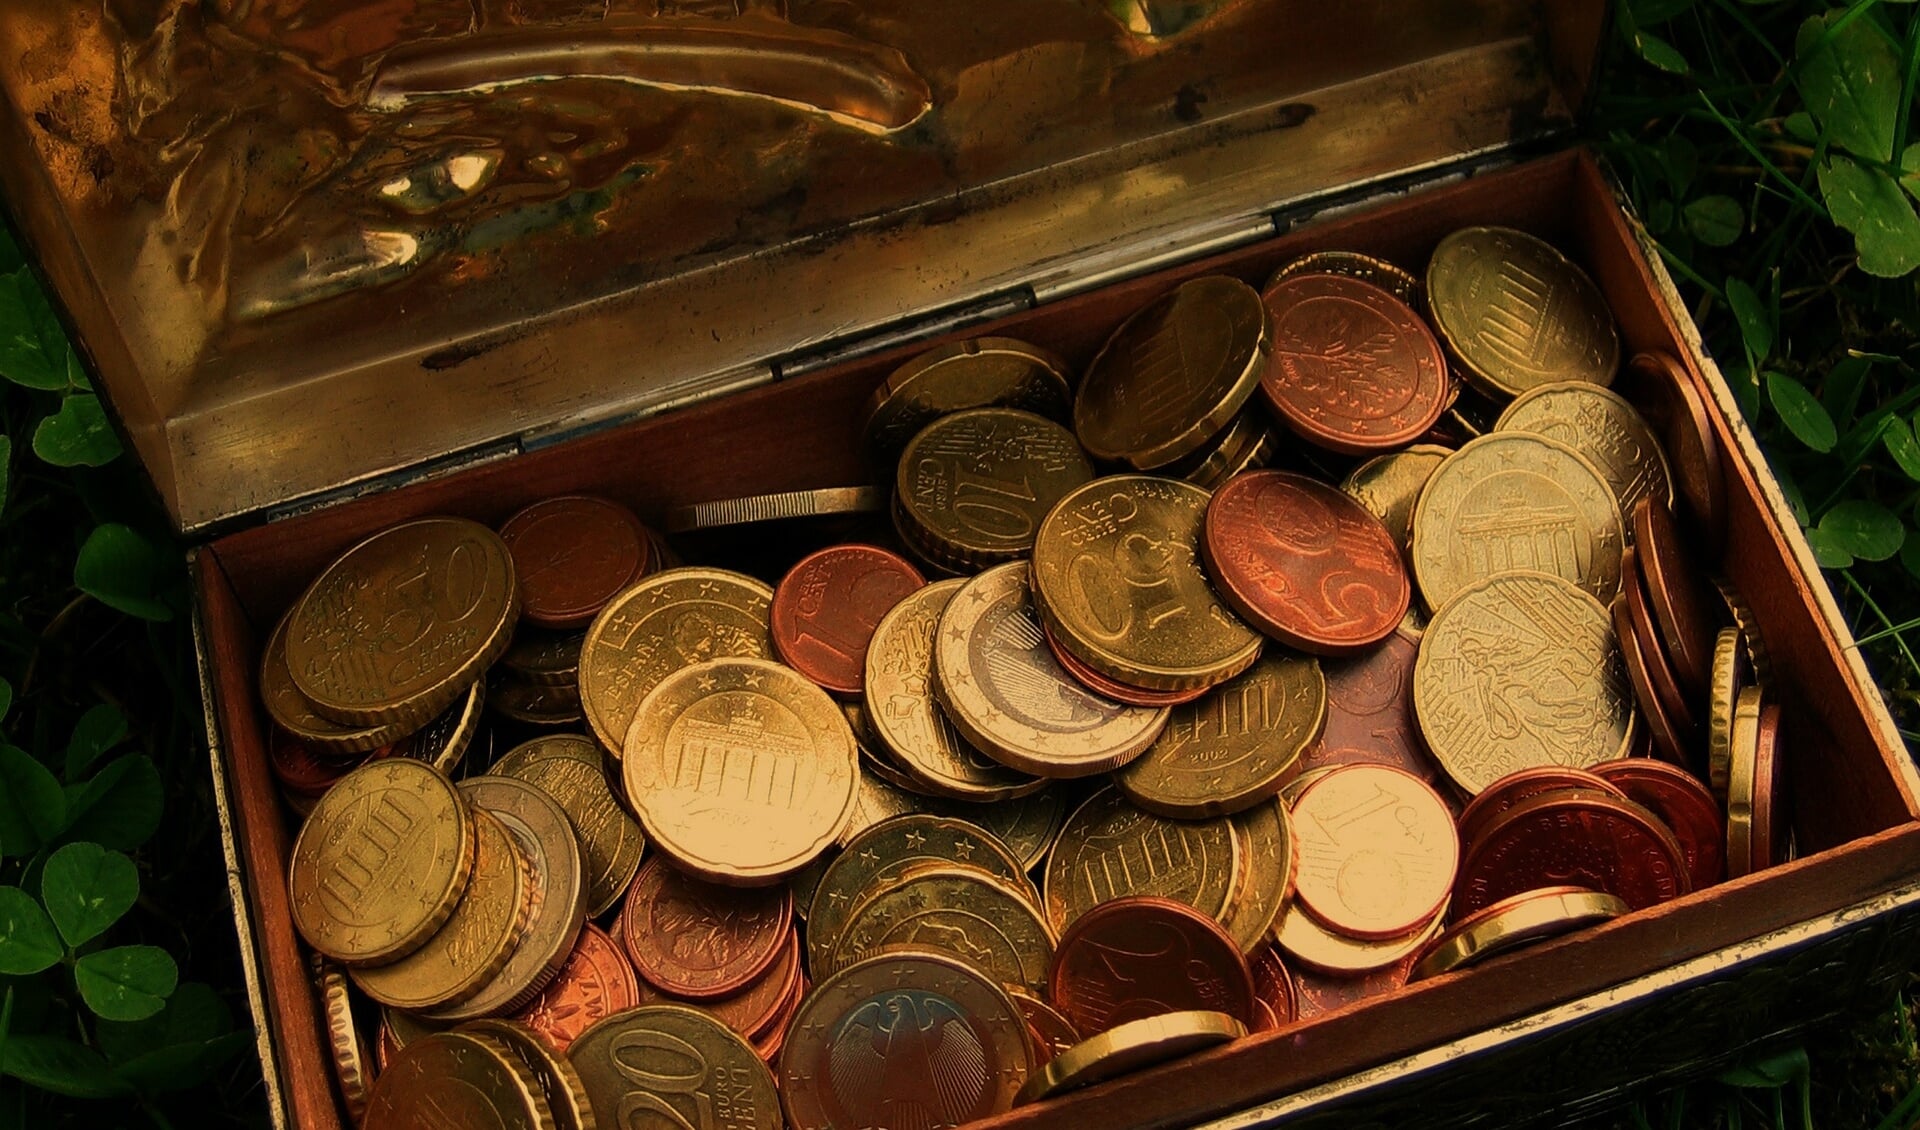 Welke schatten heeft iemand nog thuis liggen? Een bijzondere euromunt uit Vaticaanstad bijvoorbeeld. Dat soort munten kom je tegen op een muntenbeurs.